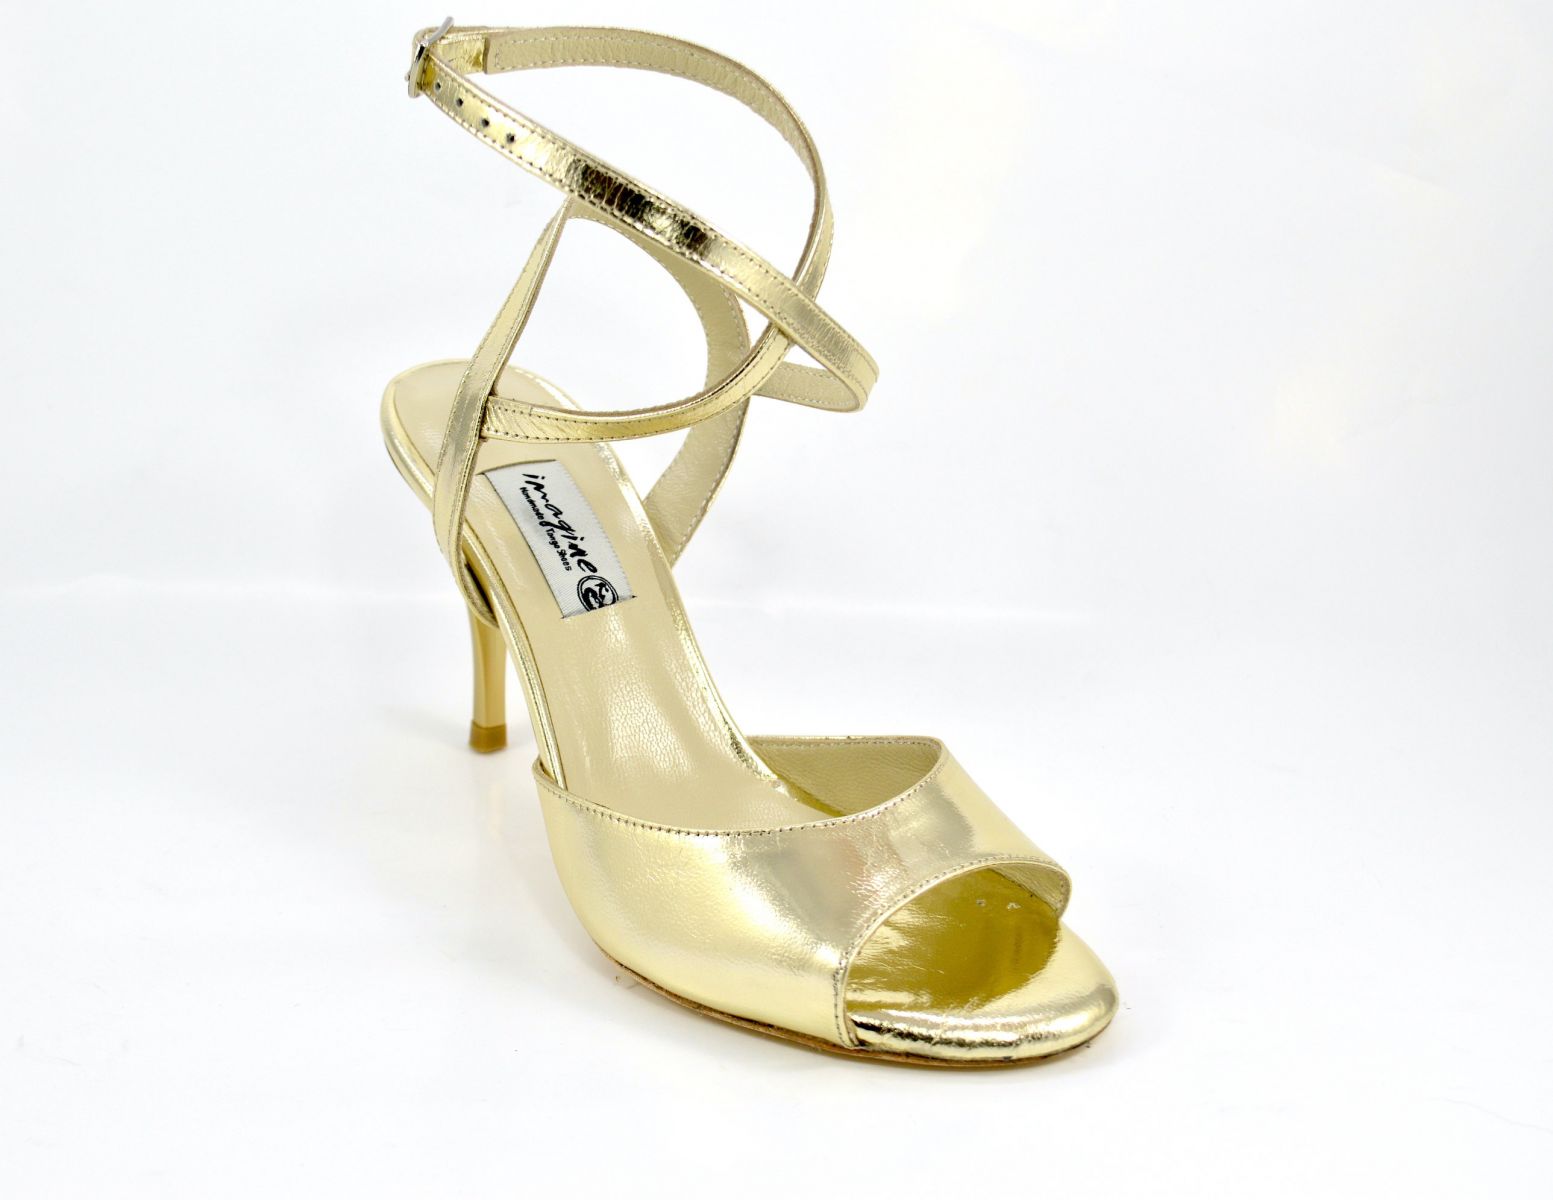 Γυναικείο παπούτσι χορού αργεντίνικου tango open heel από χρυσό δέρμα